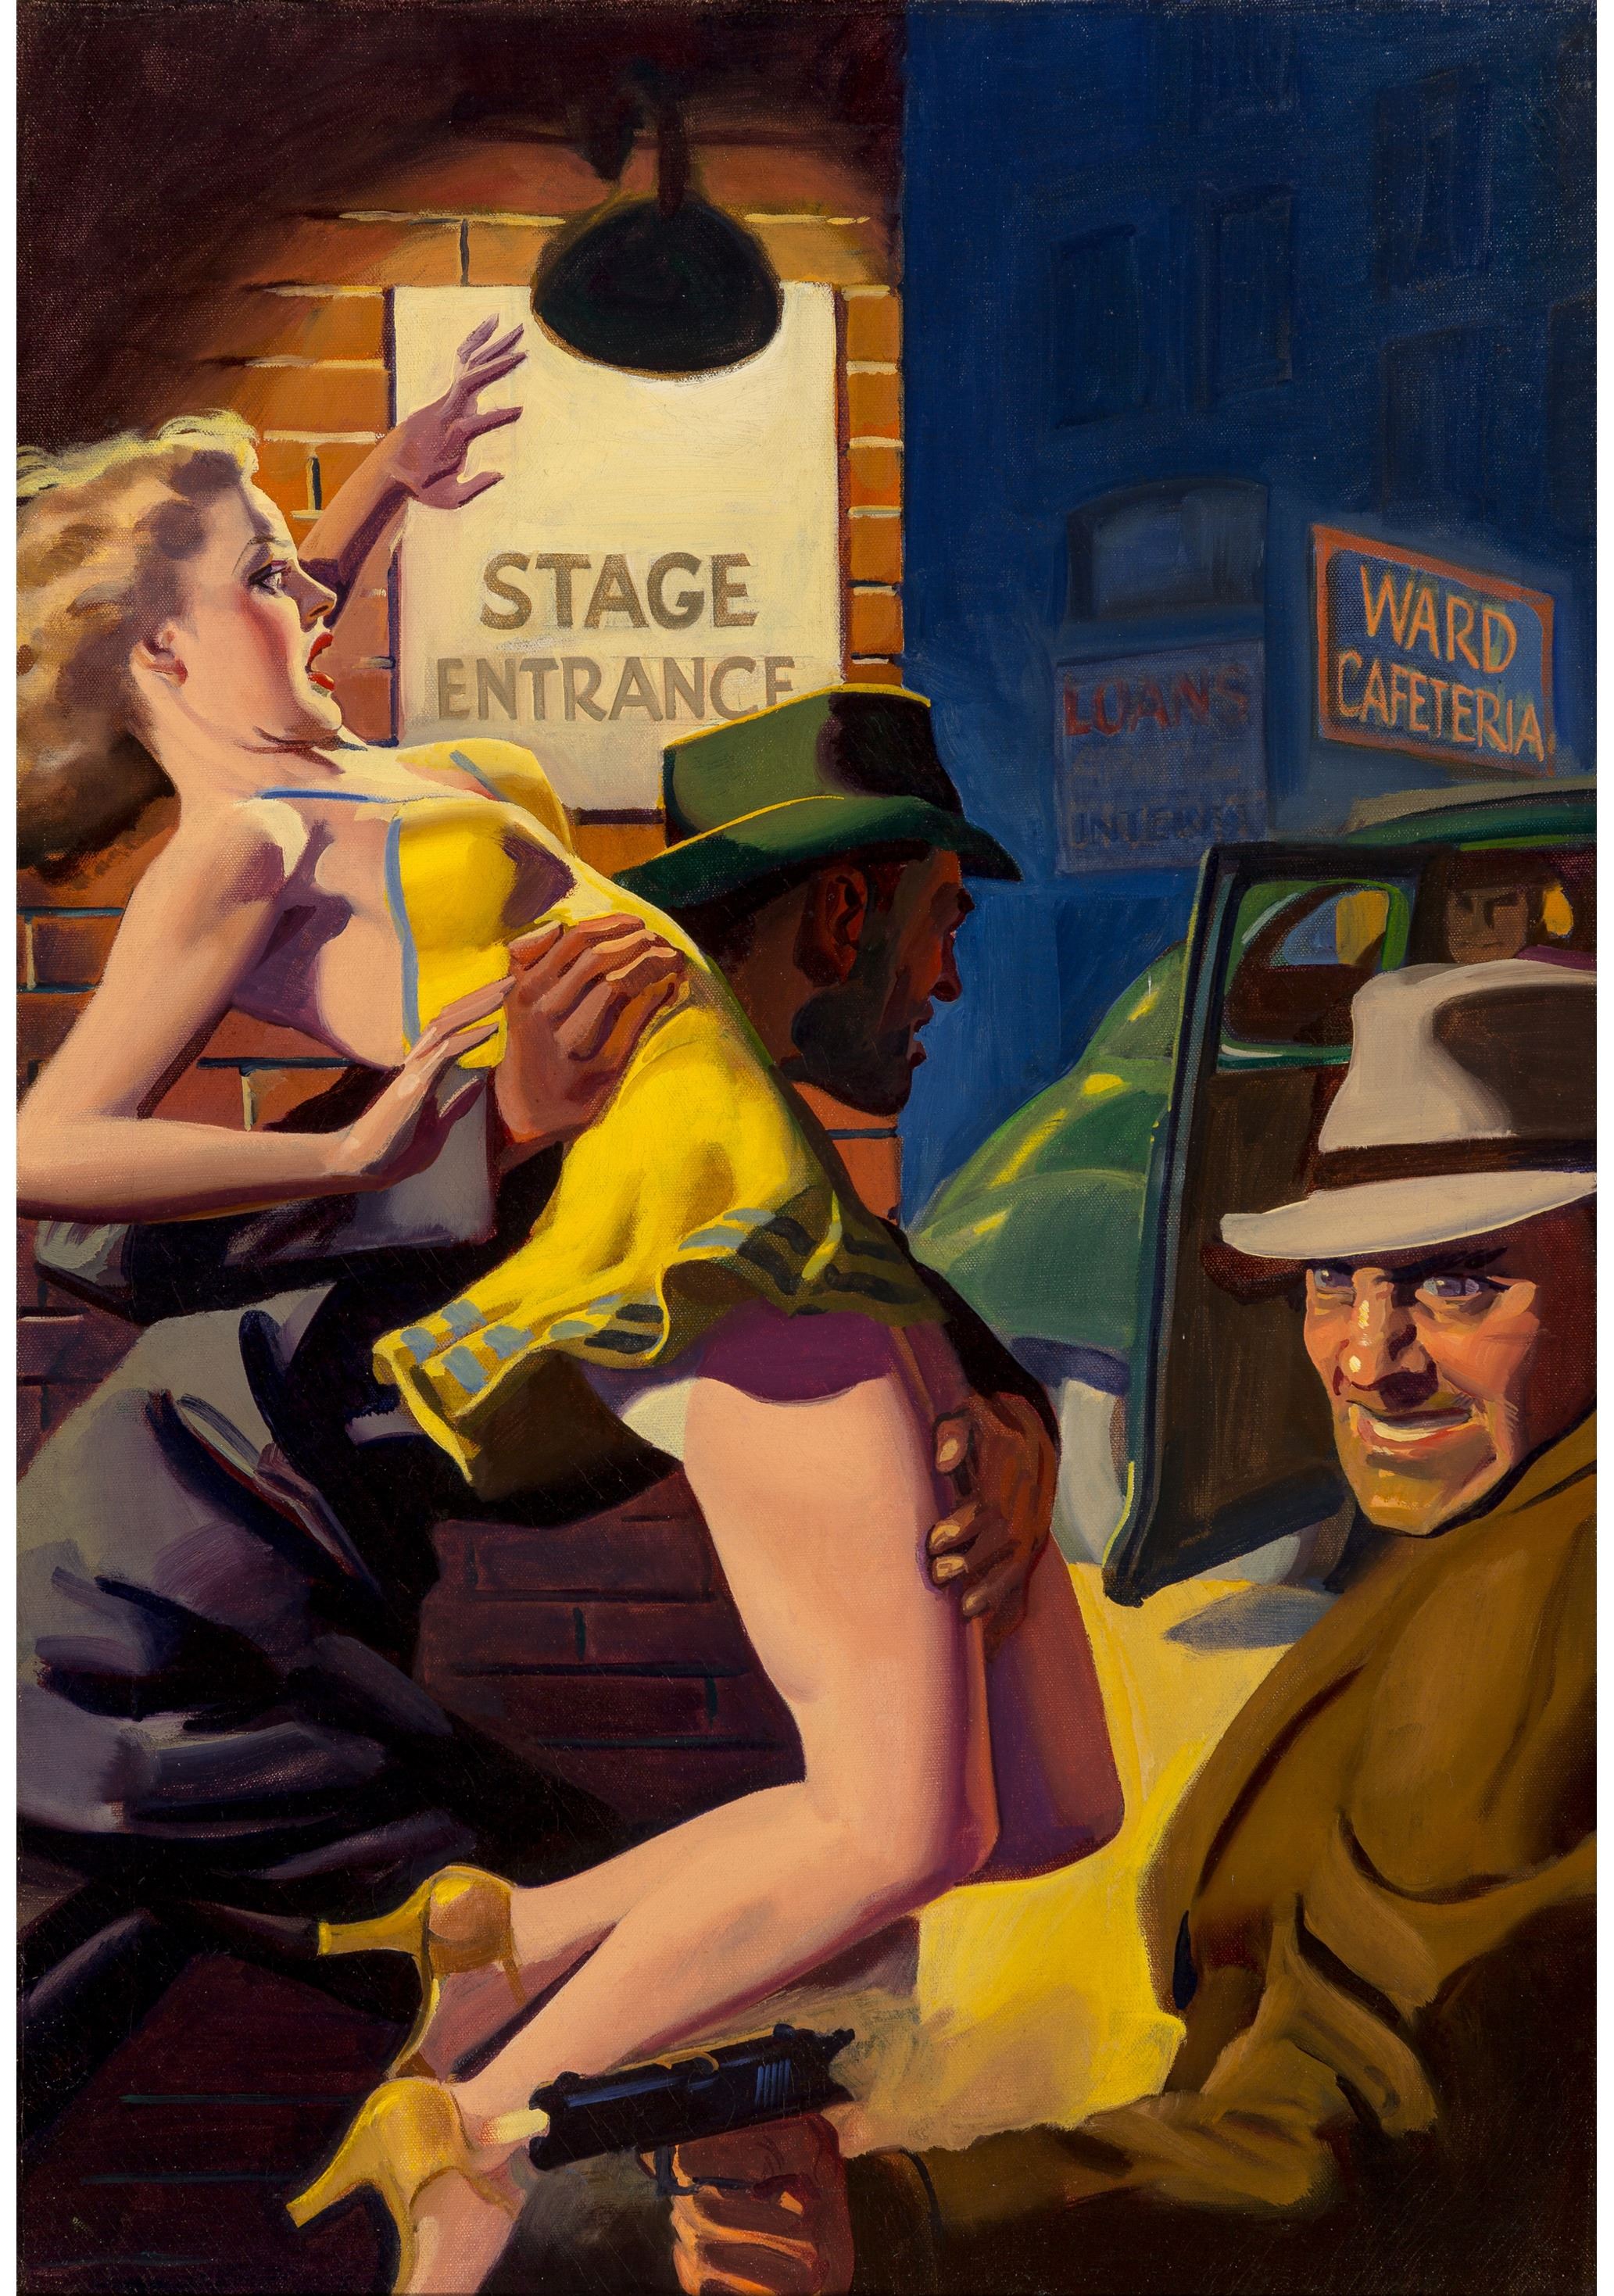 Hugh Joseph Ward, Undercover Man, Private Detective magazine cover (1942)